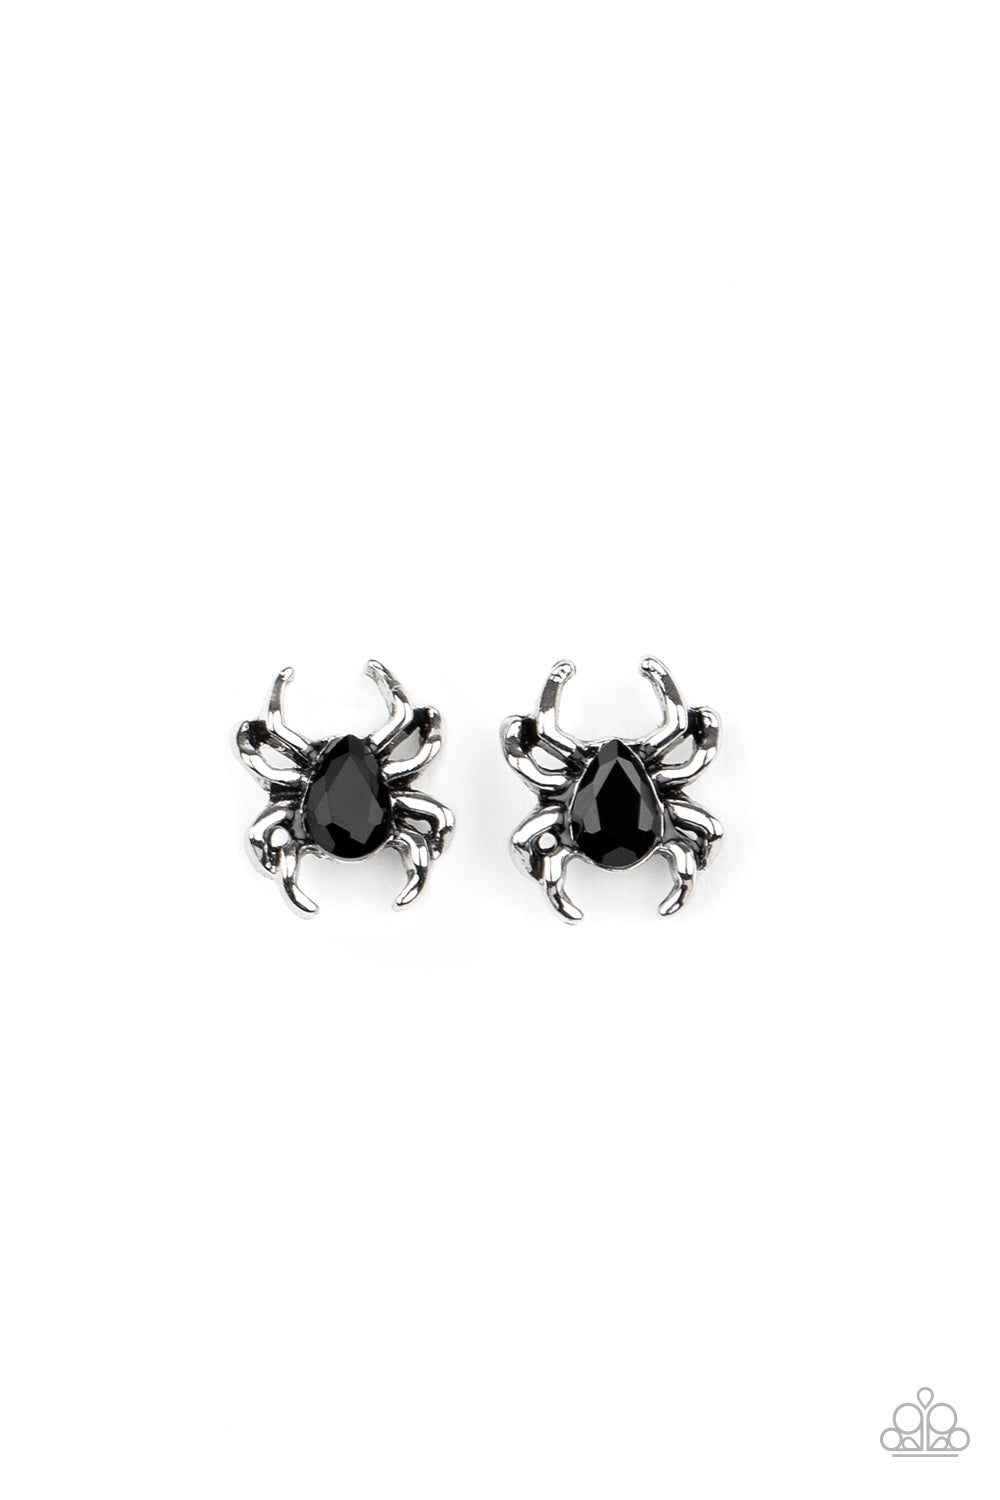 Starlet Shimmer Halloween Rhinestone Spider Earring